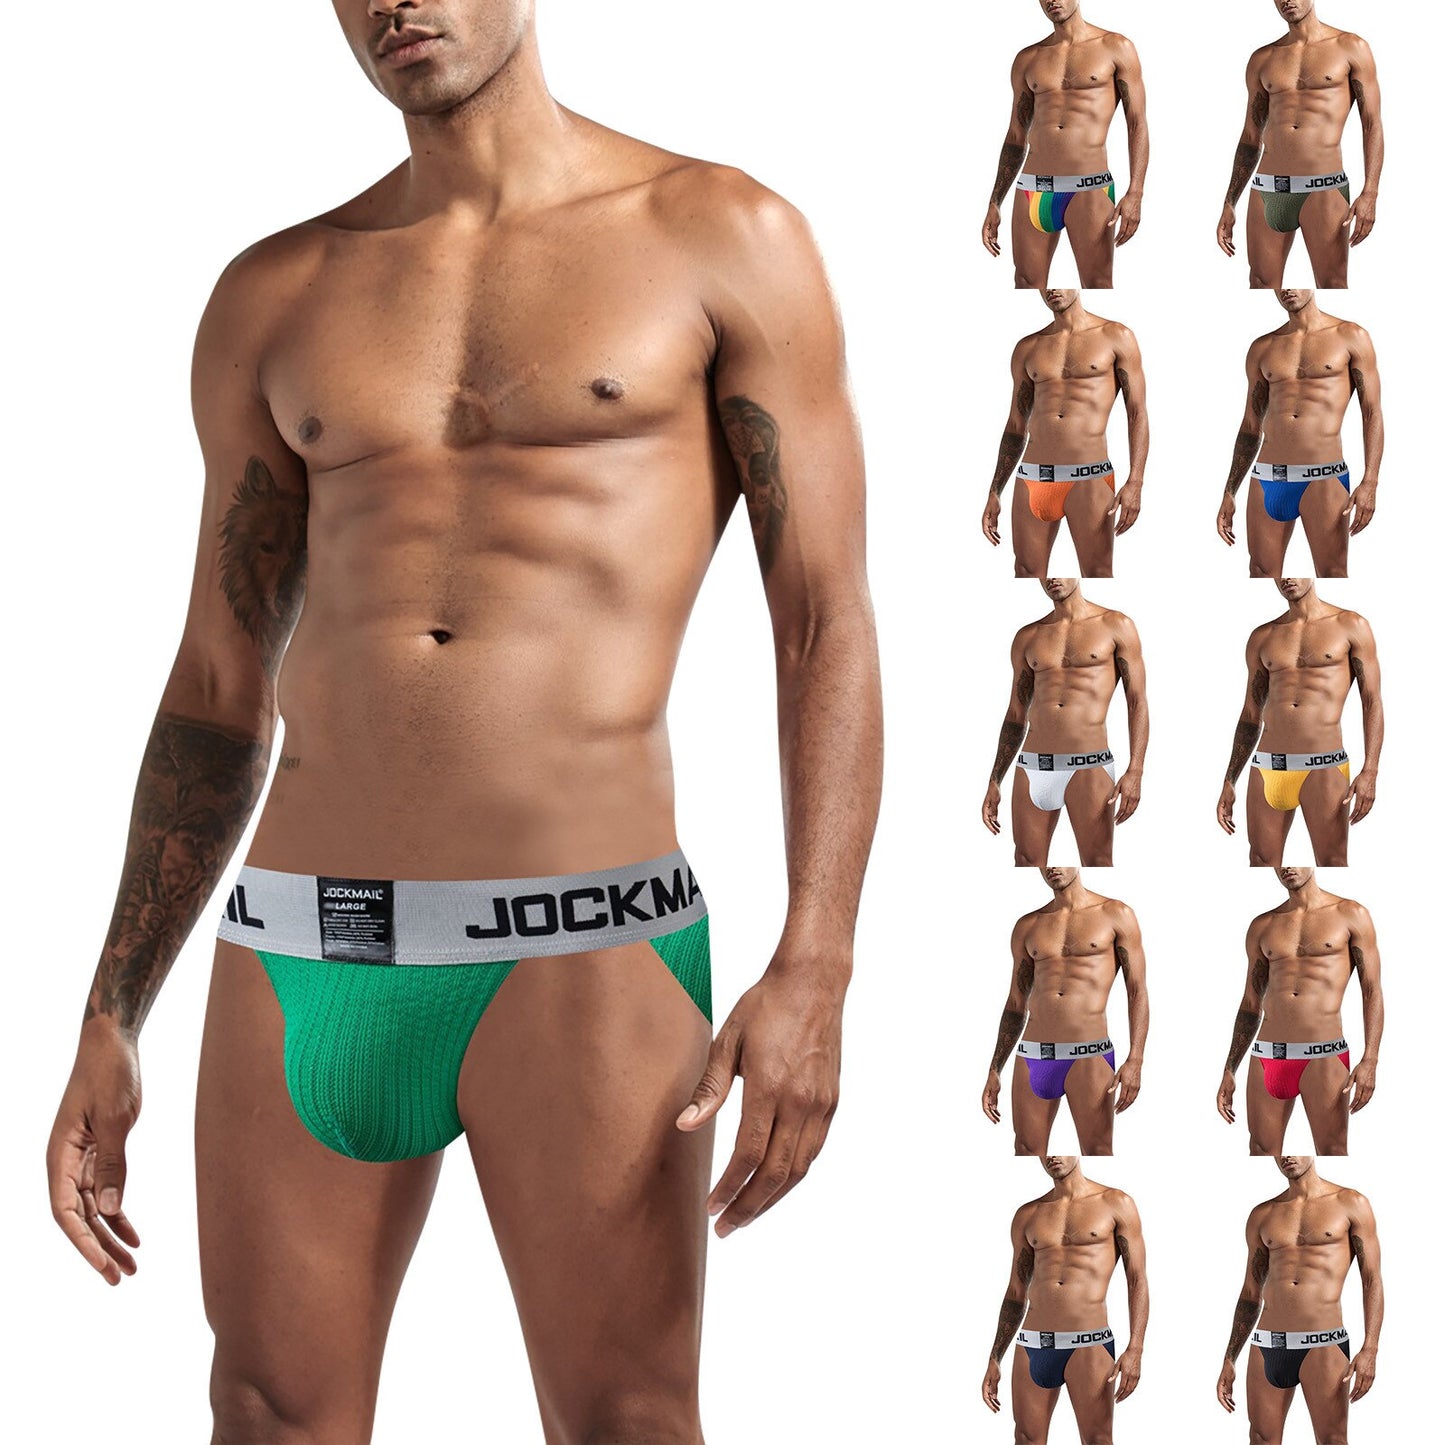 JOCKMAIL Men's Underwear Jockstraps